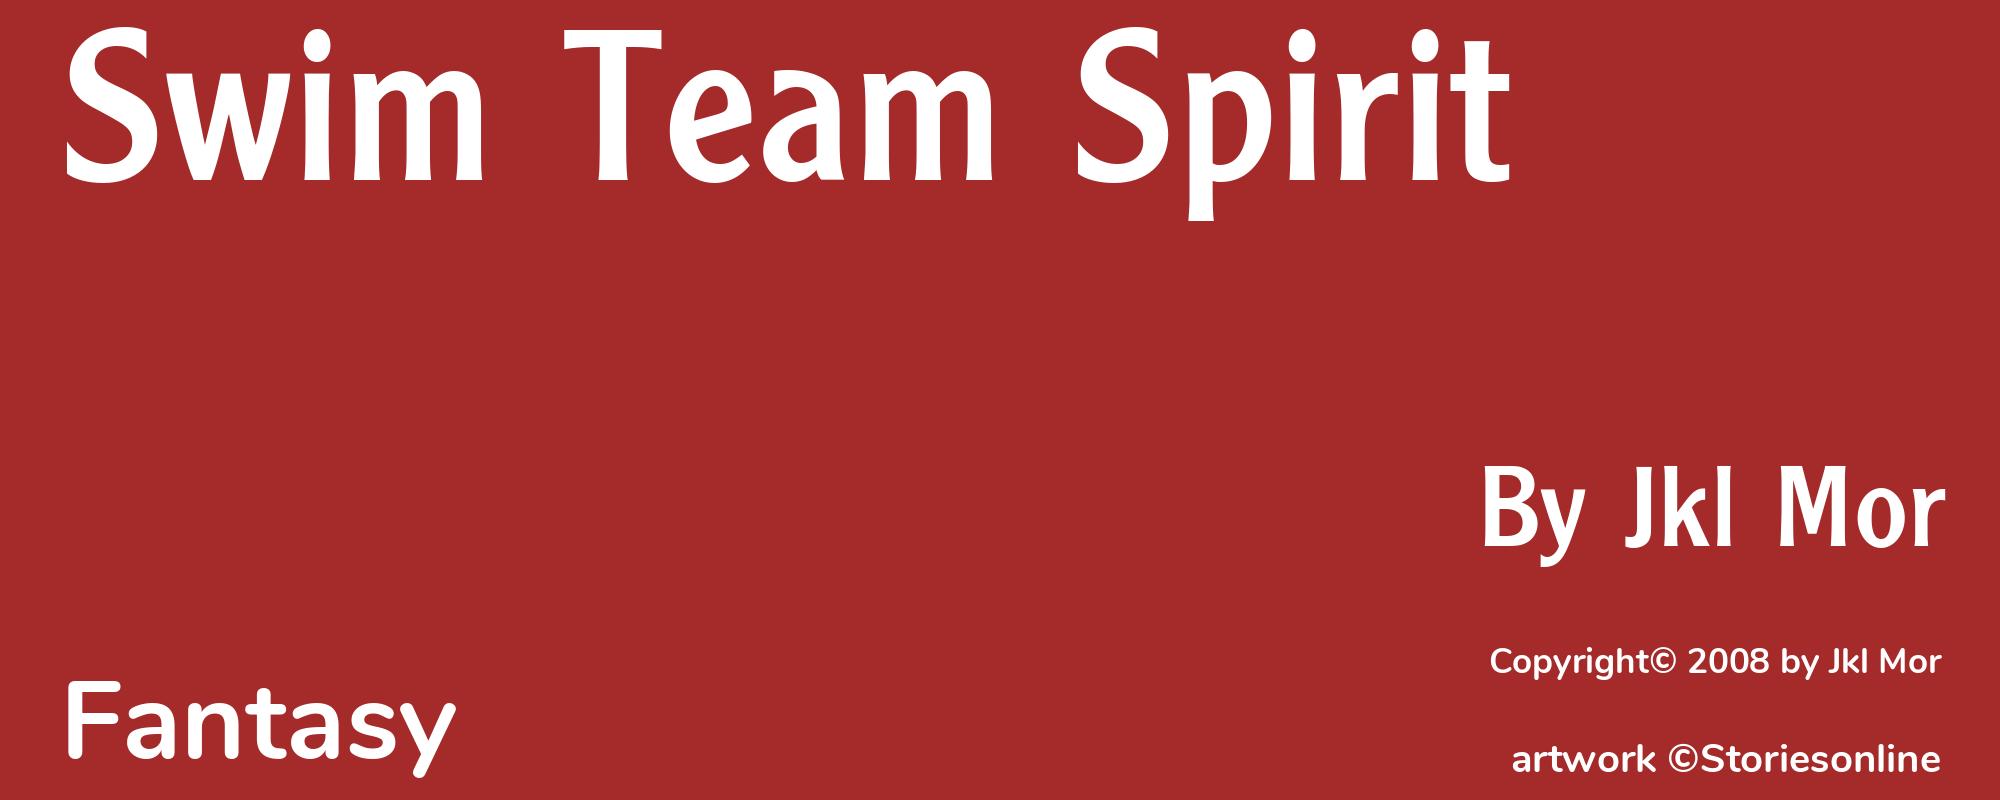 Swim Team Spirit - Cover